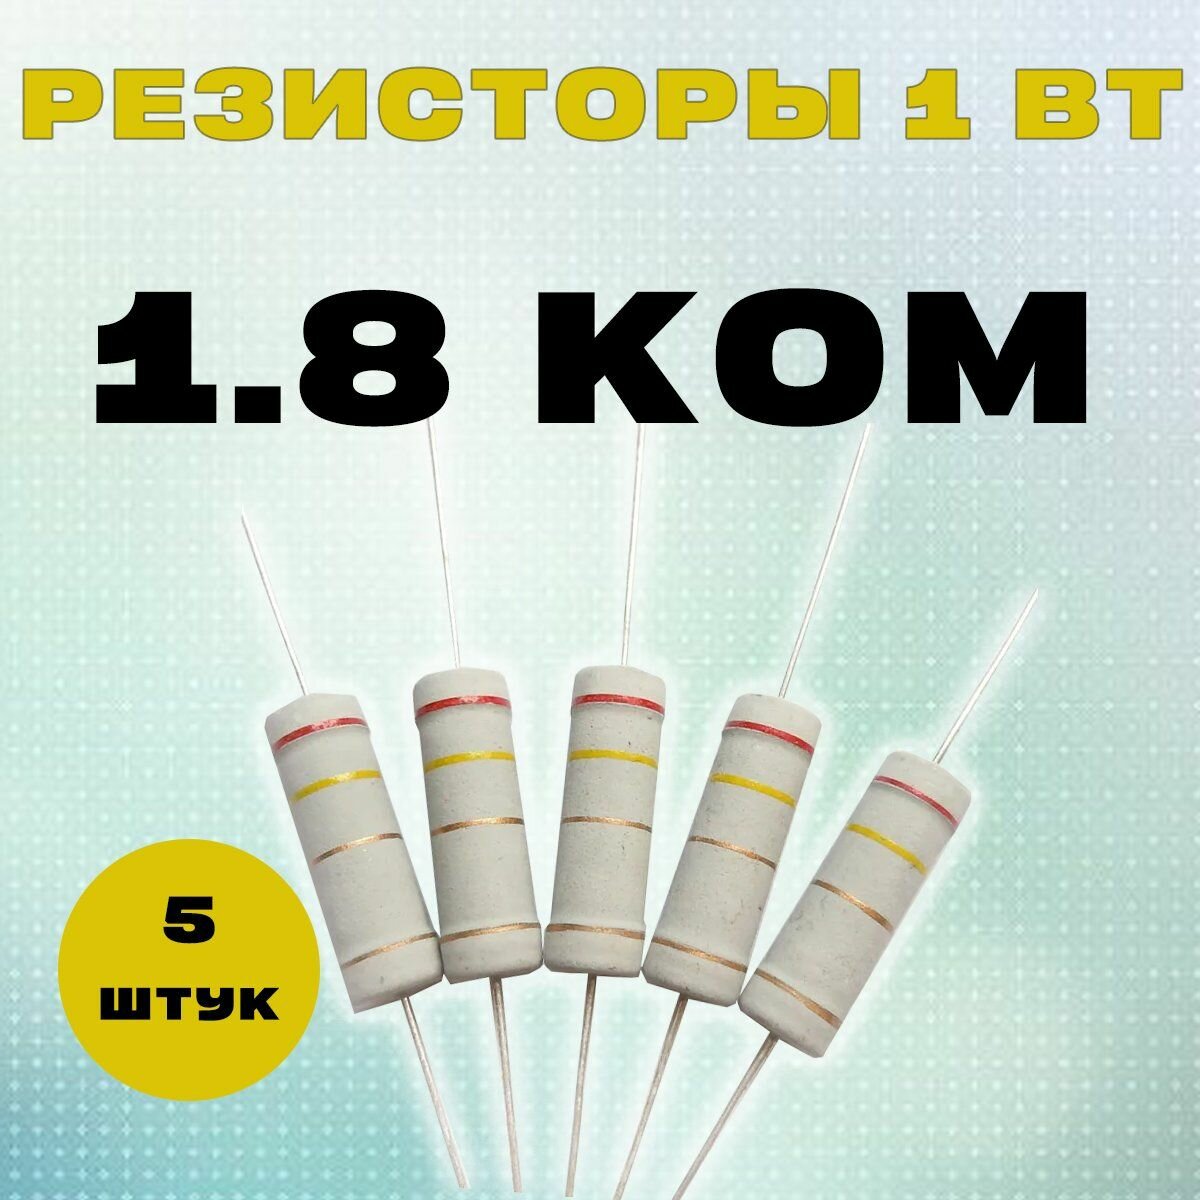 Резистор 1W 1K8 kOm - 1 Вт 1.8 кОм